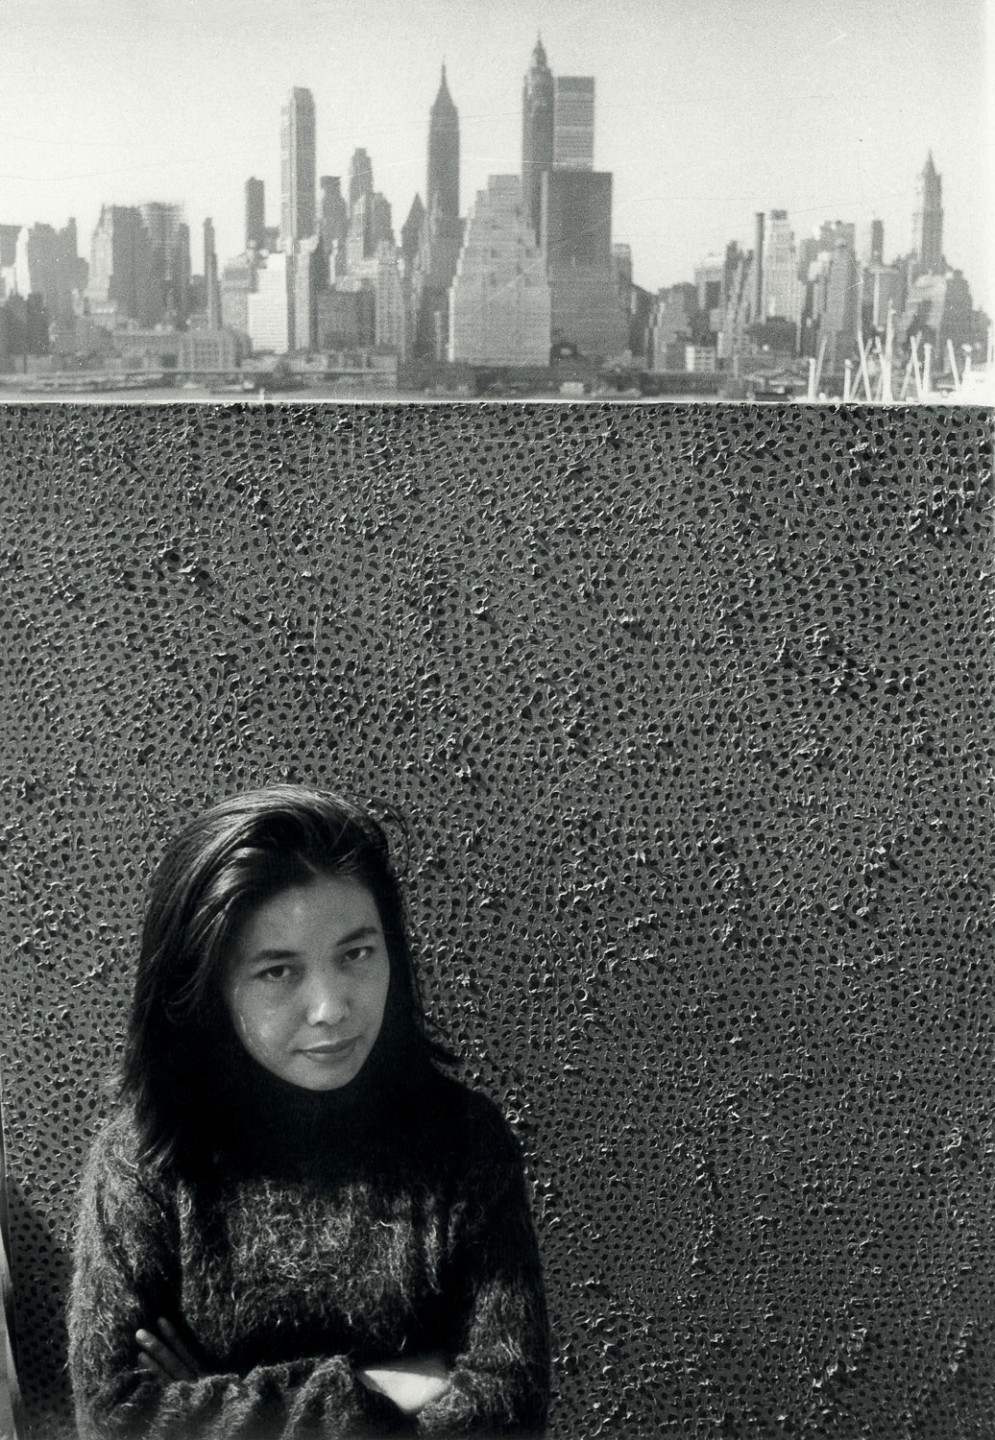 Yayoi Kusama framför en av sina Infinity Net målningar i New York, ca. 1961